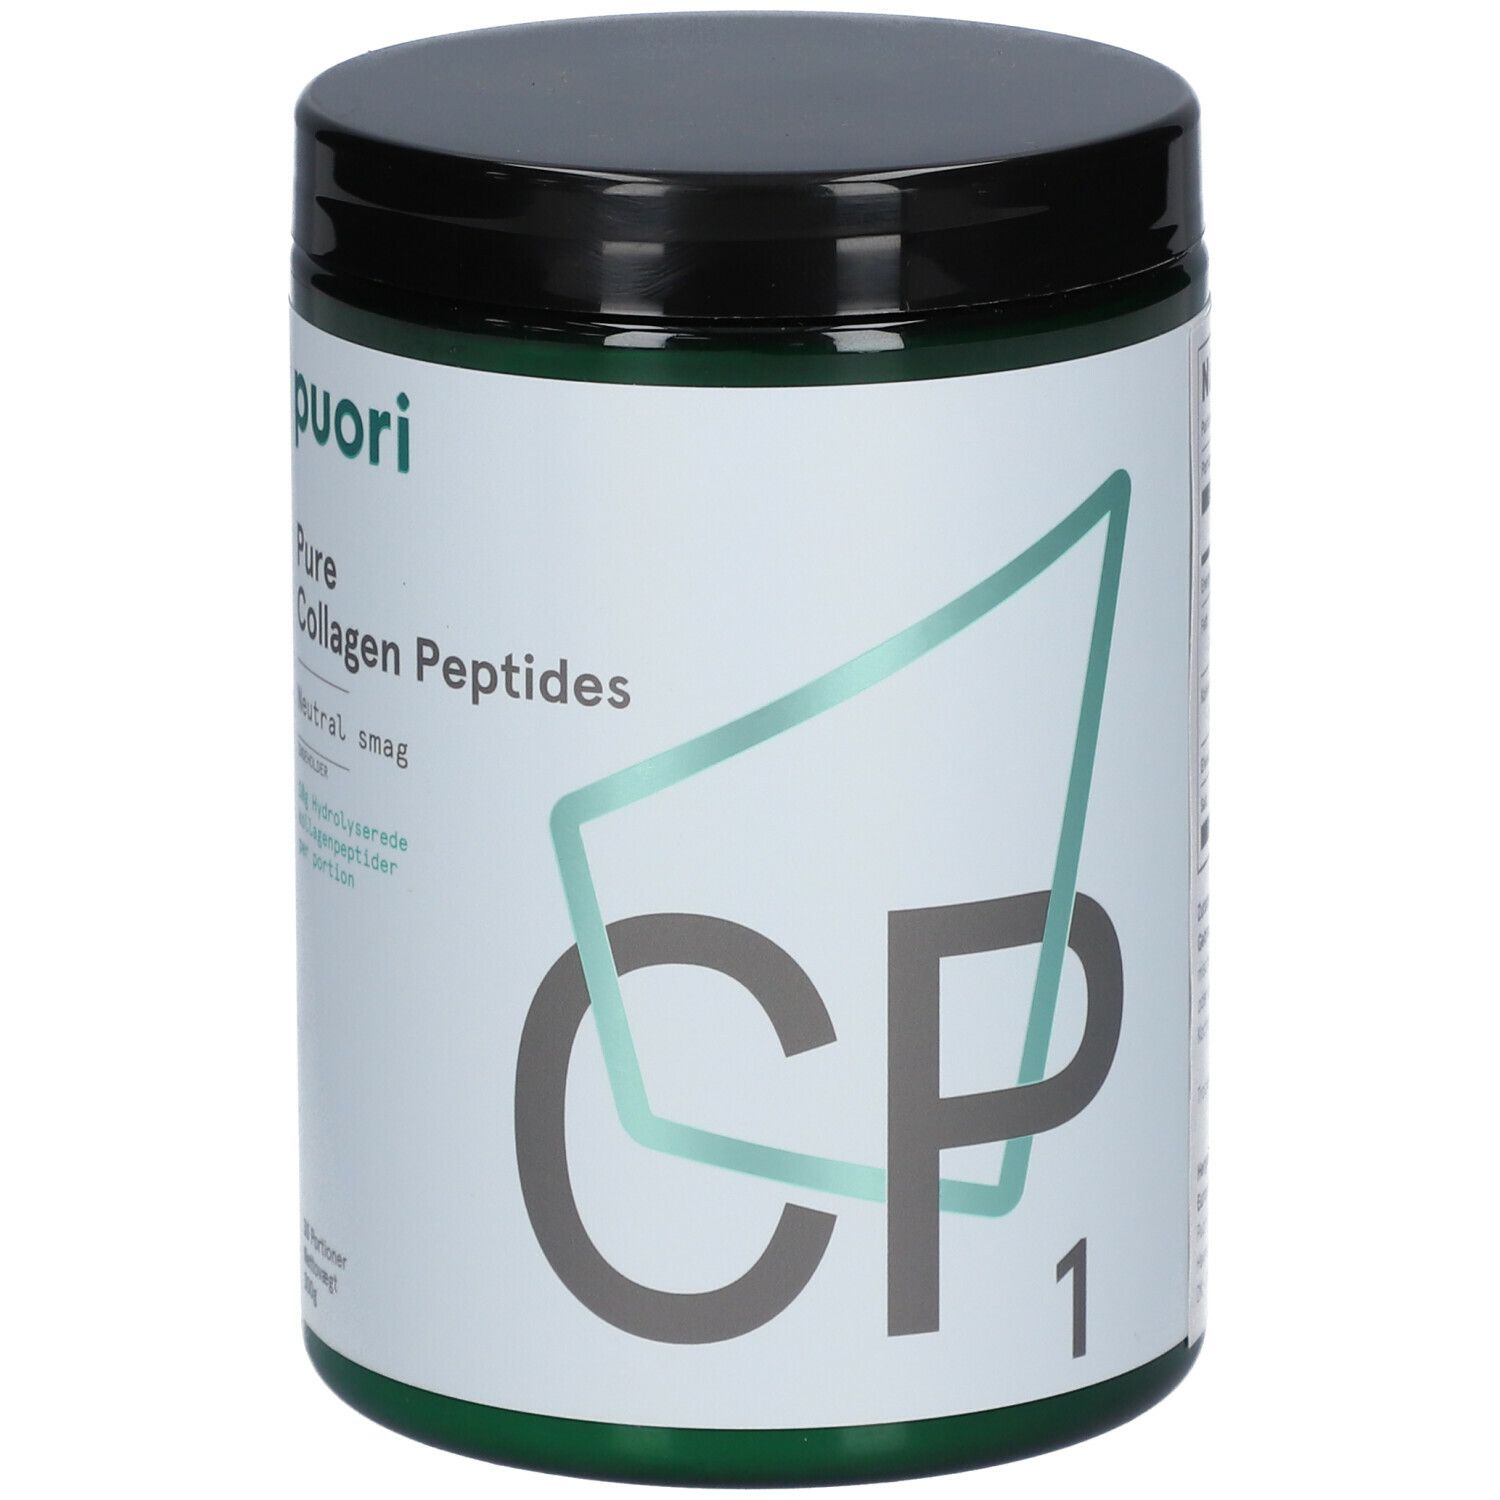 puori CP1 Collagen Peptide